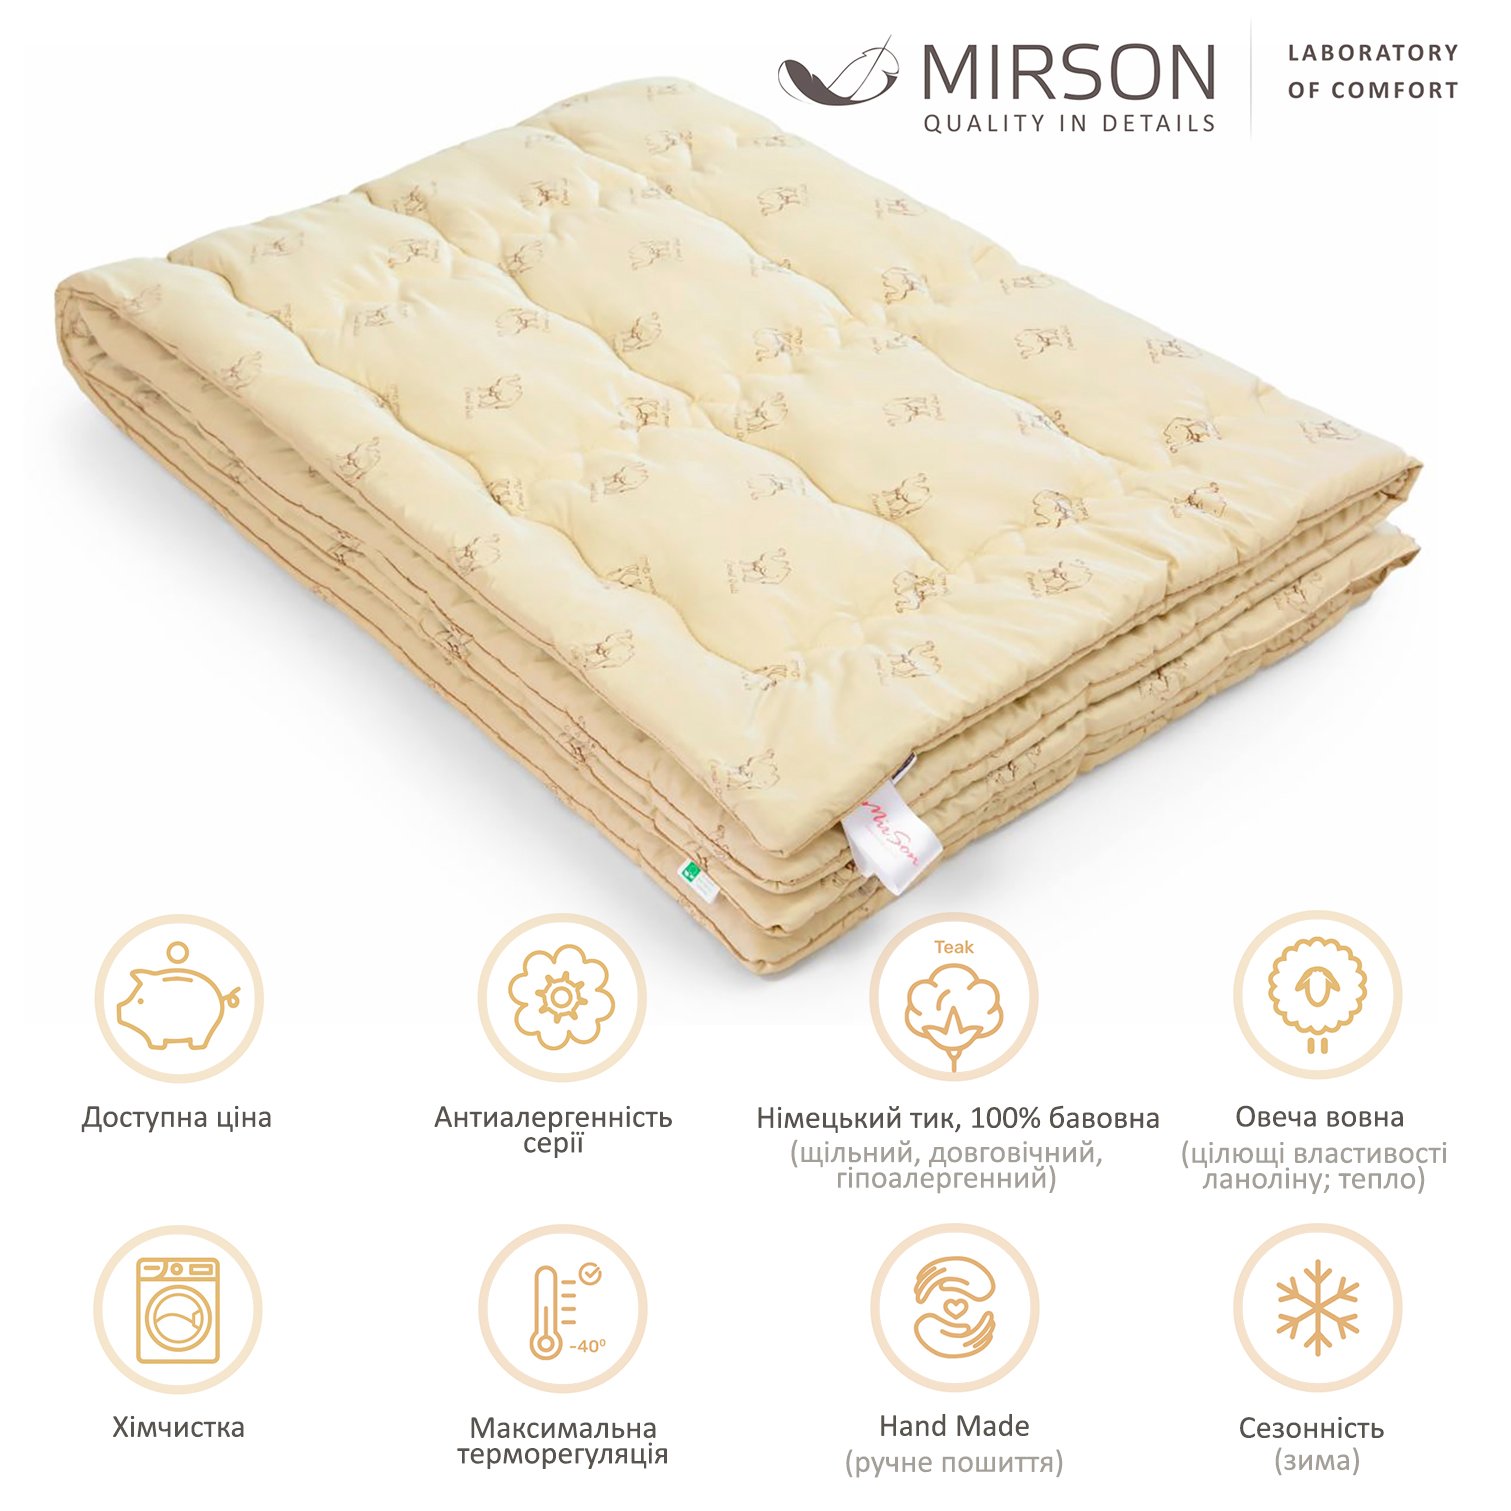 Одеяло шерстяное MirSon Gold Camel Hand Made №175, зимнее, 140x205 см, кремовое - фото 4